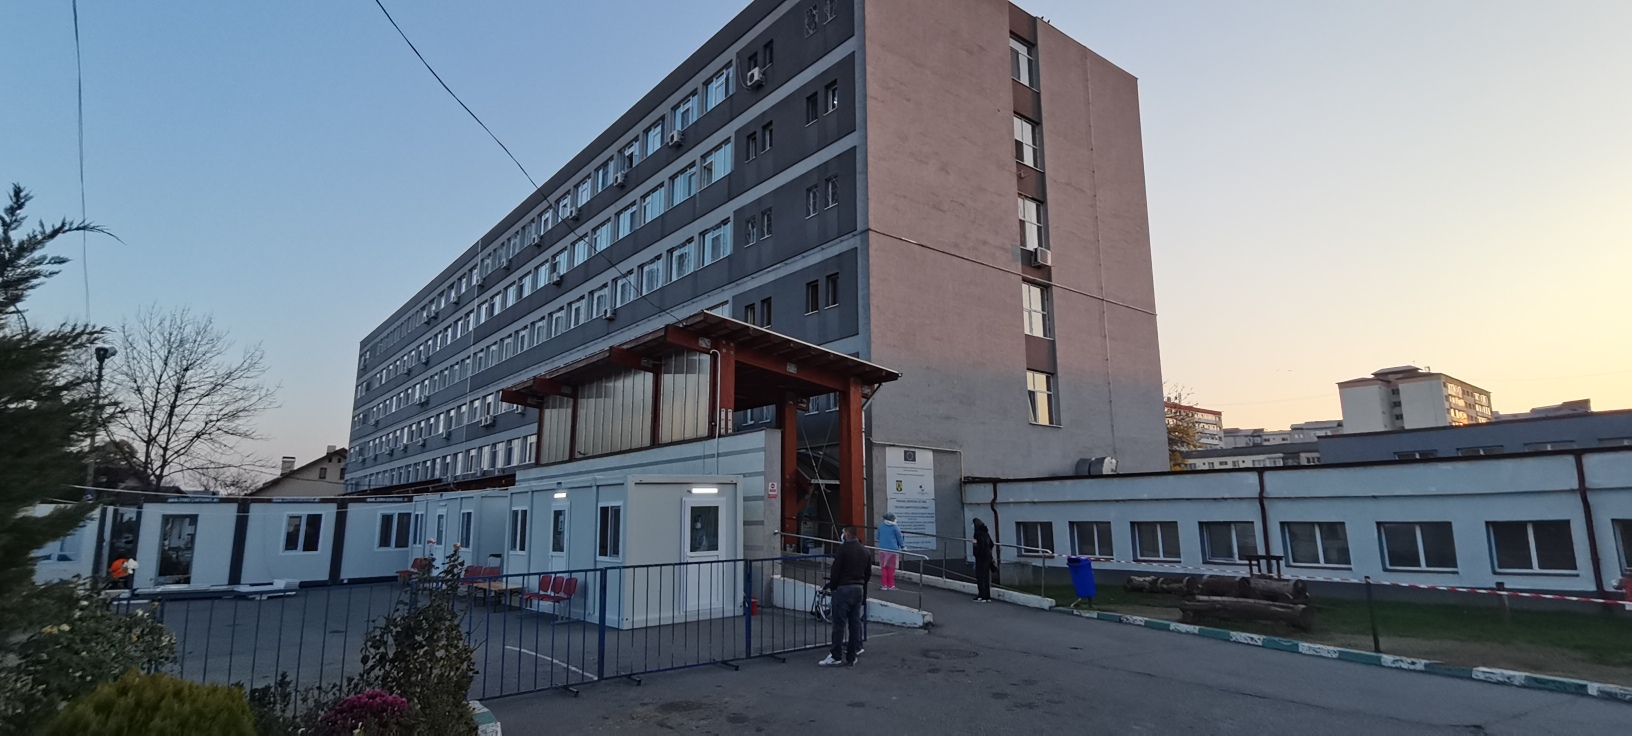 Spitalul Județean de Urgență Târgoviște a primit noi dotări, ce vor spori gradul de confort al pacienților, în special al celor suspecți și confirmați COVID. A început montarea ansamblurilor modulare de containere, cu încălzire pe perioada iernii.